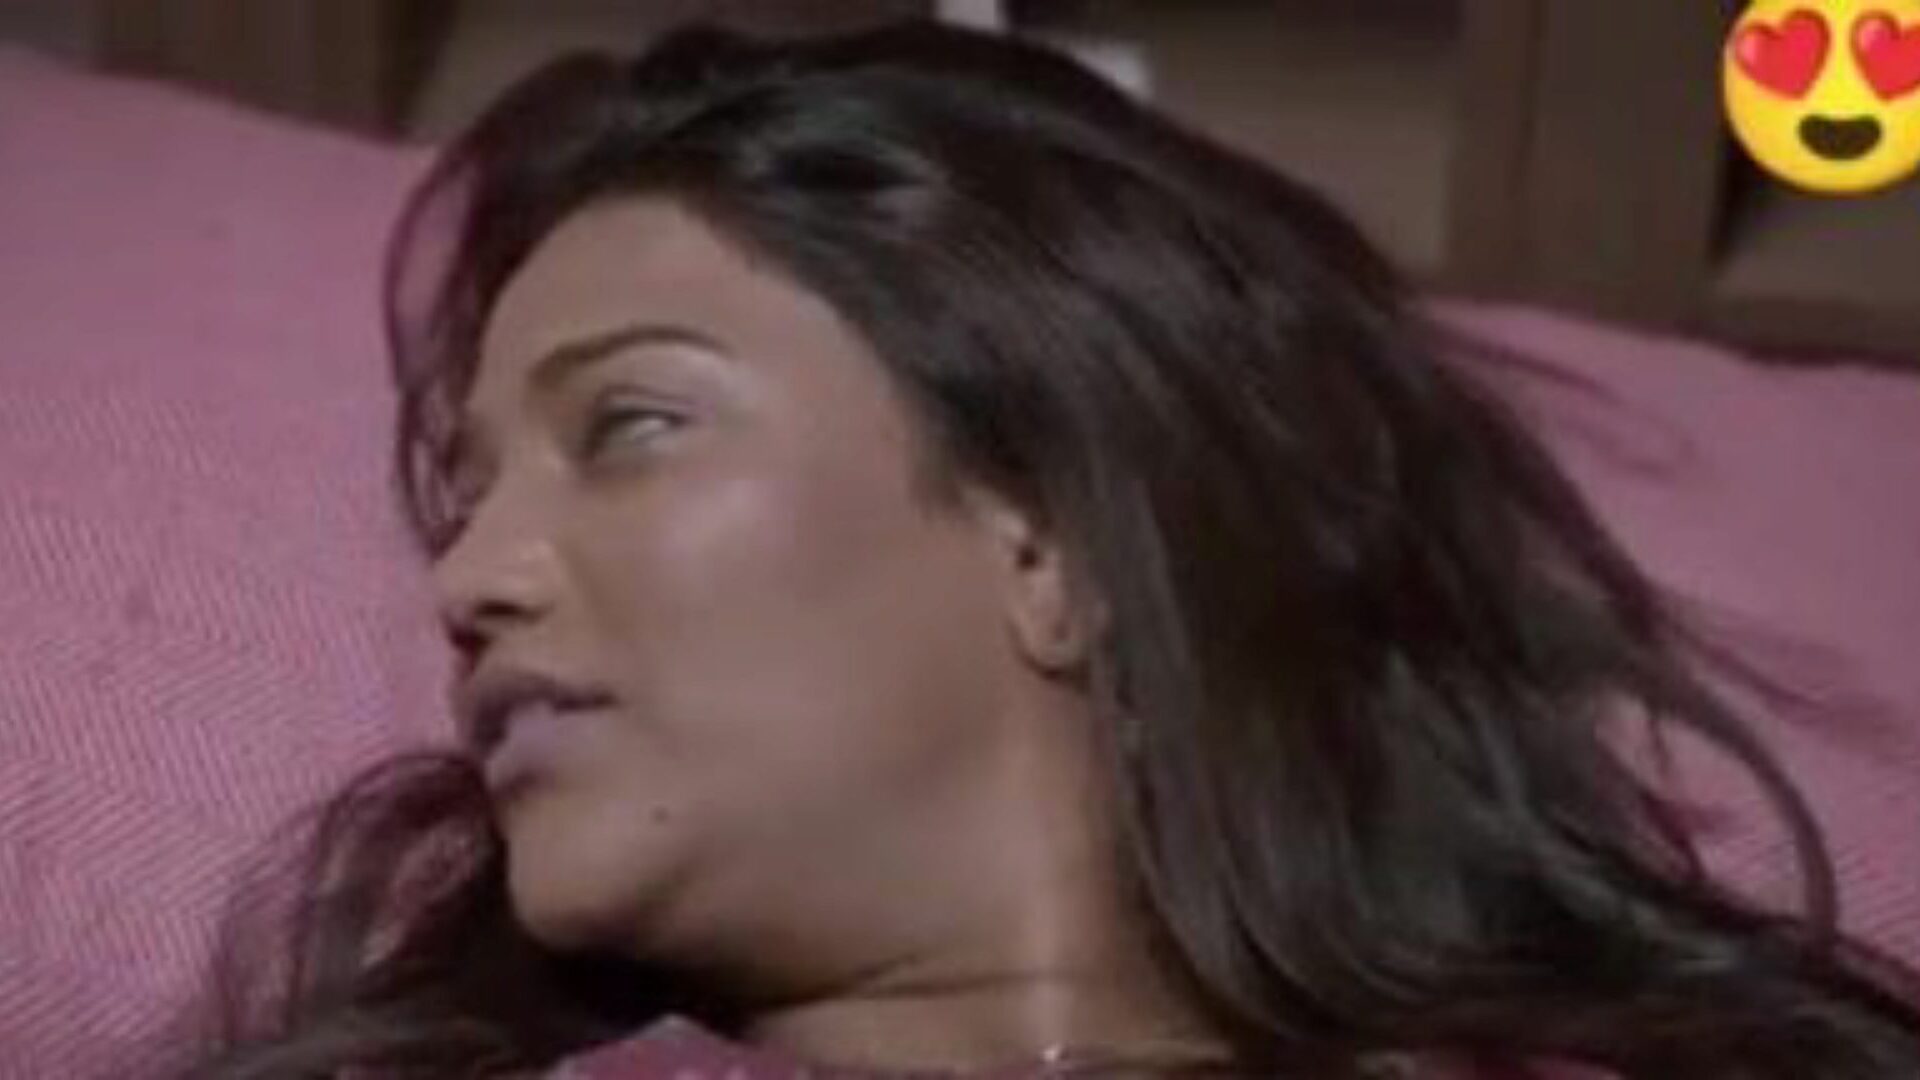 مزدوج dhamaka saree sex ، free Indian porn da: xhamster watch double dhamaka saree sex movie on xhamster ، مورد ويب أنبوب الجماع الضخم مع أطنان من مشاهد الأفلام الإباحية الهندية الجديدة المجانية للجميع xxx & hindi pornography movie